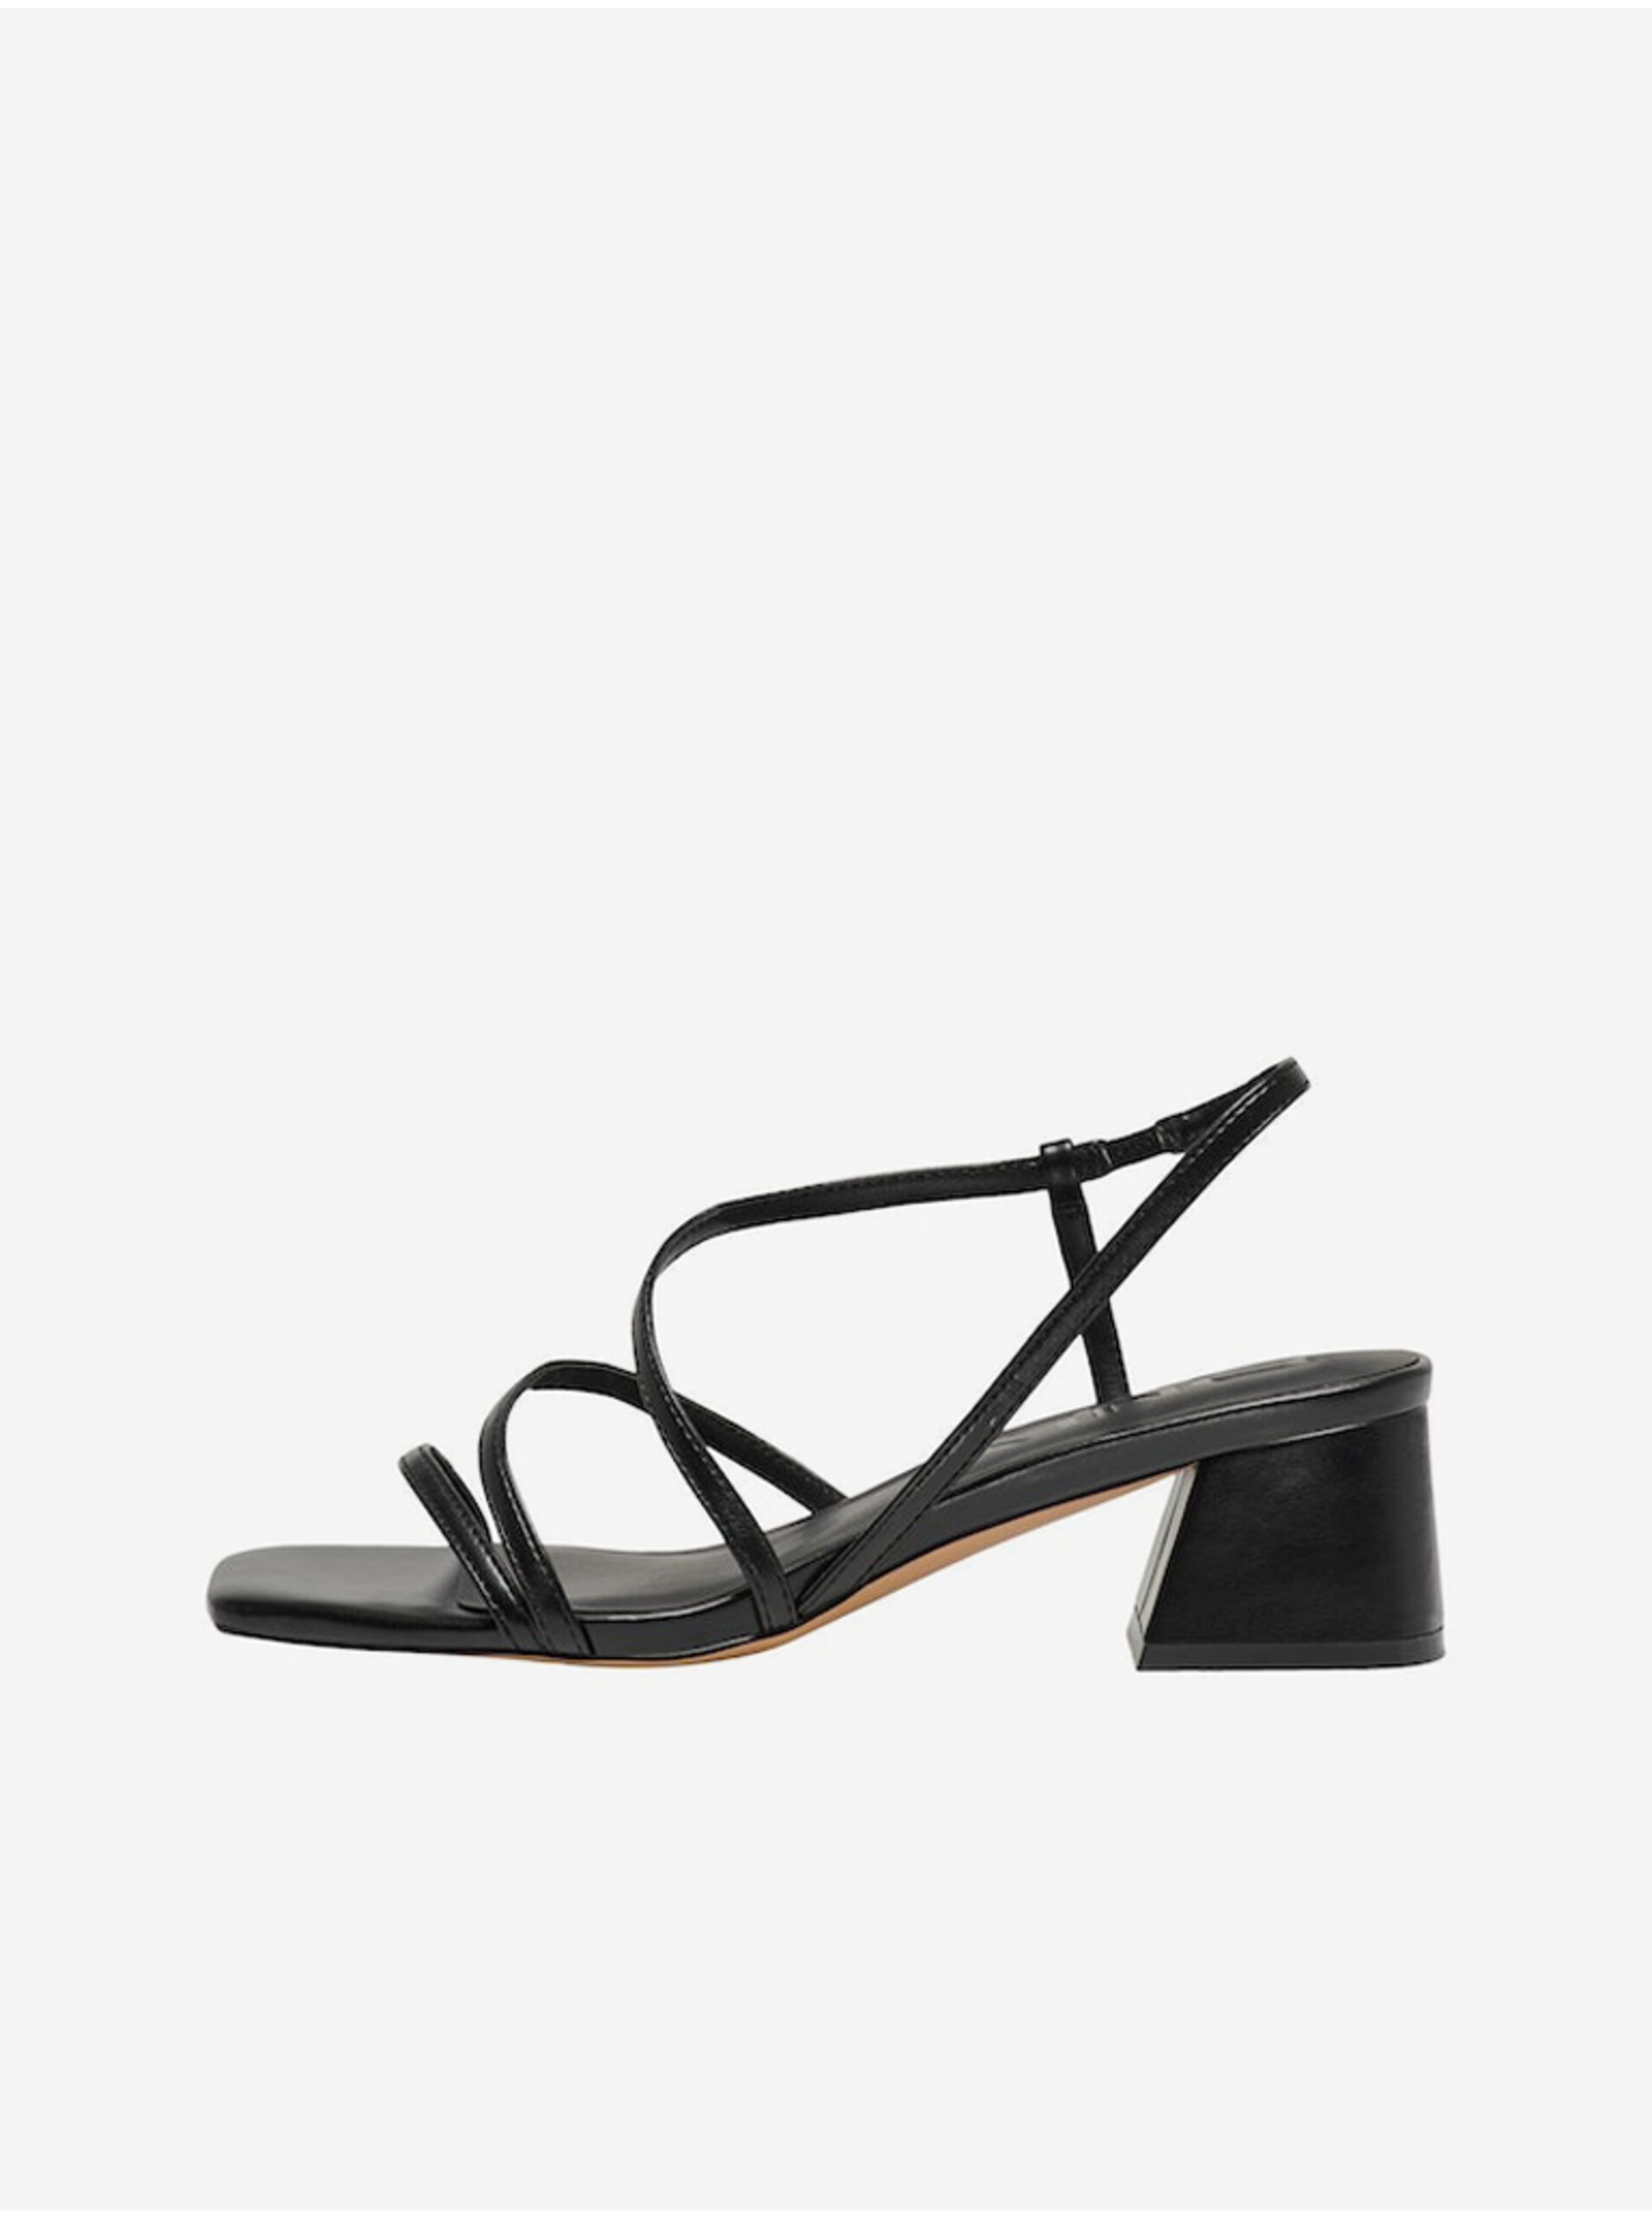 E-shop Čierne dámske sandále na podpätku ONLY Aylin-3